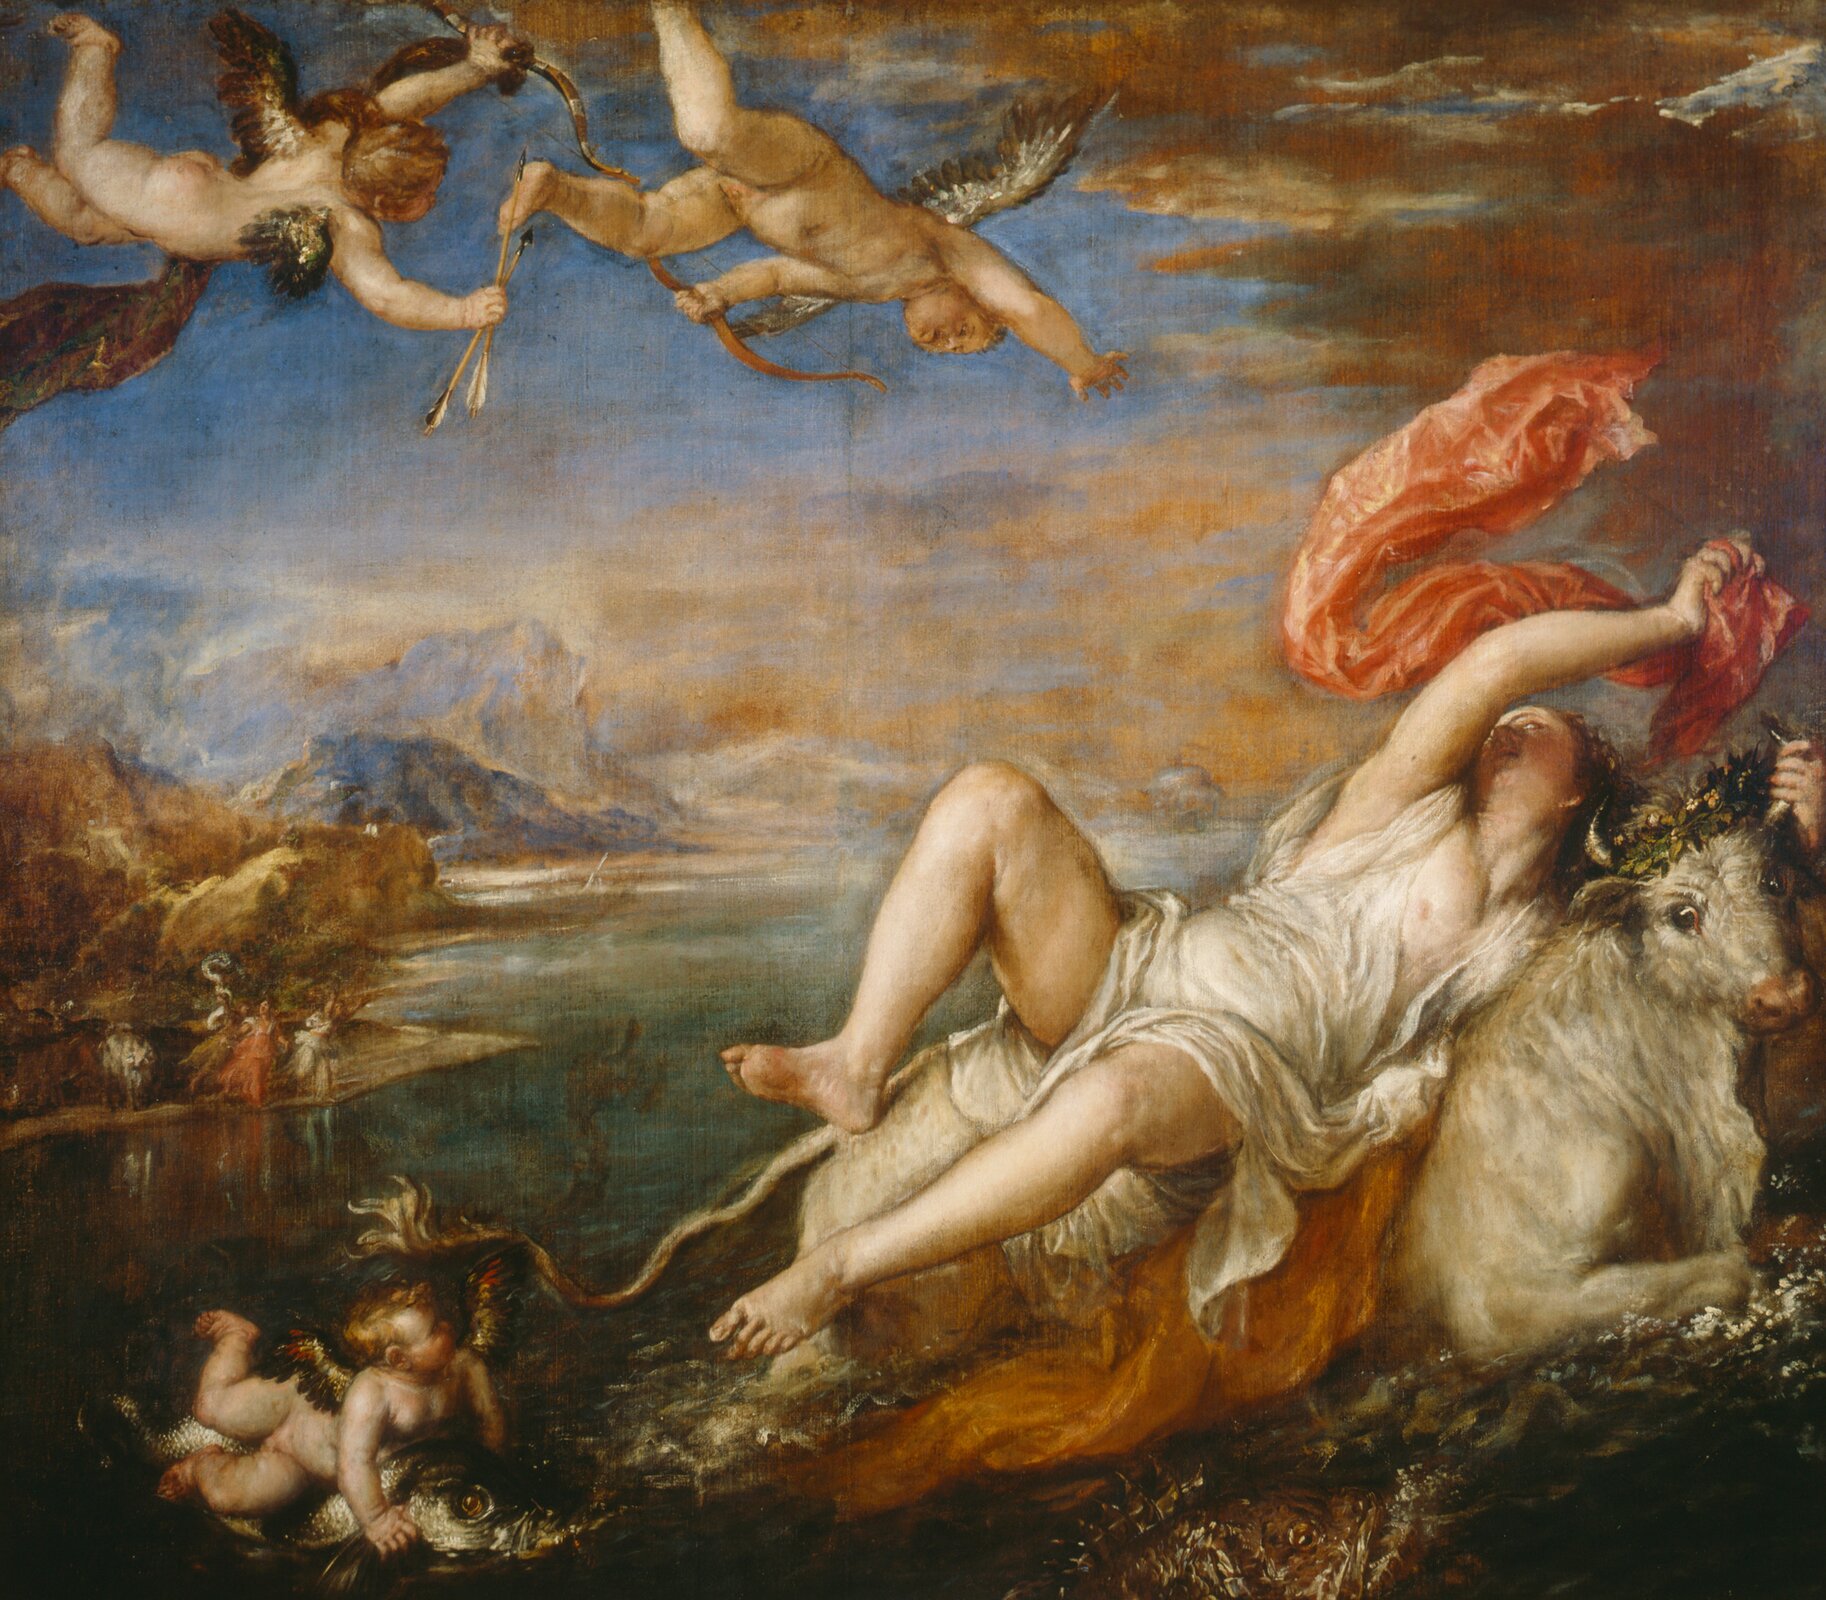 Ilustracja przedstawia obraz „Porwanie Europy” autorstwa Tycjana. Dynamiczna kompozycja ukazuje mitologiczną scenę porwania Europy przez zakochanego w niej Zeusa, który w tym celu wcielił się w postać białego byka. Scena rozgrywa się na tle morskiego pejzażu, nad którym wznoszą się ostre szczyty gór. Niebieskie niebo spowite jest brązowo-pomarańczowymi, dramatycznymi chmurami. Po prawej stronie, na dole obrazu artysta namalował płynącego, białego byka, na którego grzbiecie leży w dynamicznej pozie młoda kobieta. Dziewczyna jedną ręka trzyma się rogu zwierzęcia, jej tułów prawie ześlizguje się do wody. Ubrana jest w białą, oblepiającą ciało, mokrą szatę. W prawej dłoni powiewa czerwona materia. Za postaciami w lewym dolnym rogu malowidła płynie na rybie aniołek. Dwa skrzydlate putta z łukami i strzałami fruną również u góry na tle nieba. W oddali, na brzegu artysta namalował małe postacie kobiet ubranych w powłóczyste suknie. Obraz utrzymany jest w wąskiej, ciepłej gamie beżów i zieleni z akcentami czerwieni i błękitów.